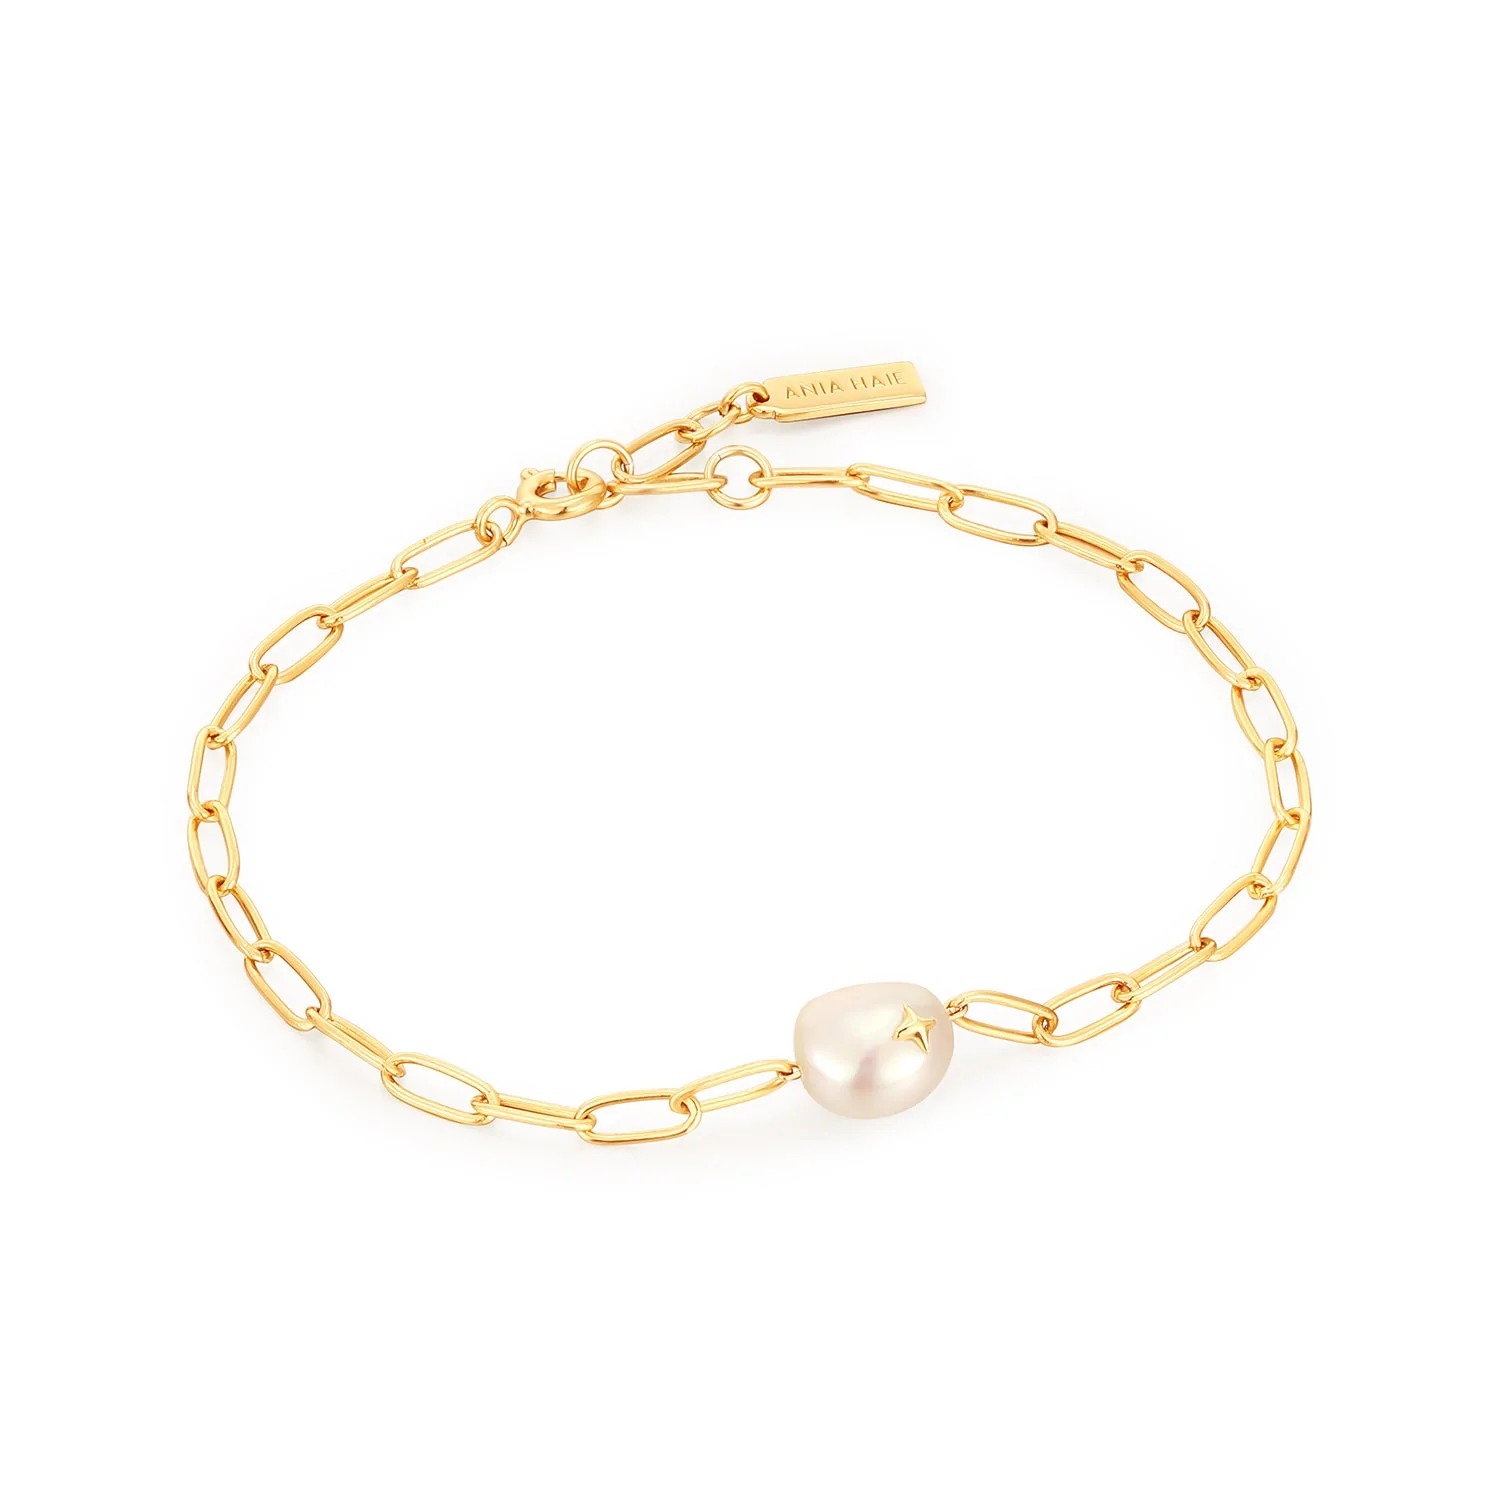 ANIA HAIE Pearl Sparkle Chunky Chain Bracelet, Gold-plated